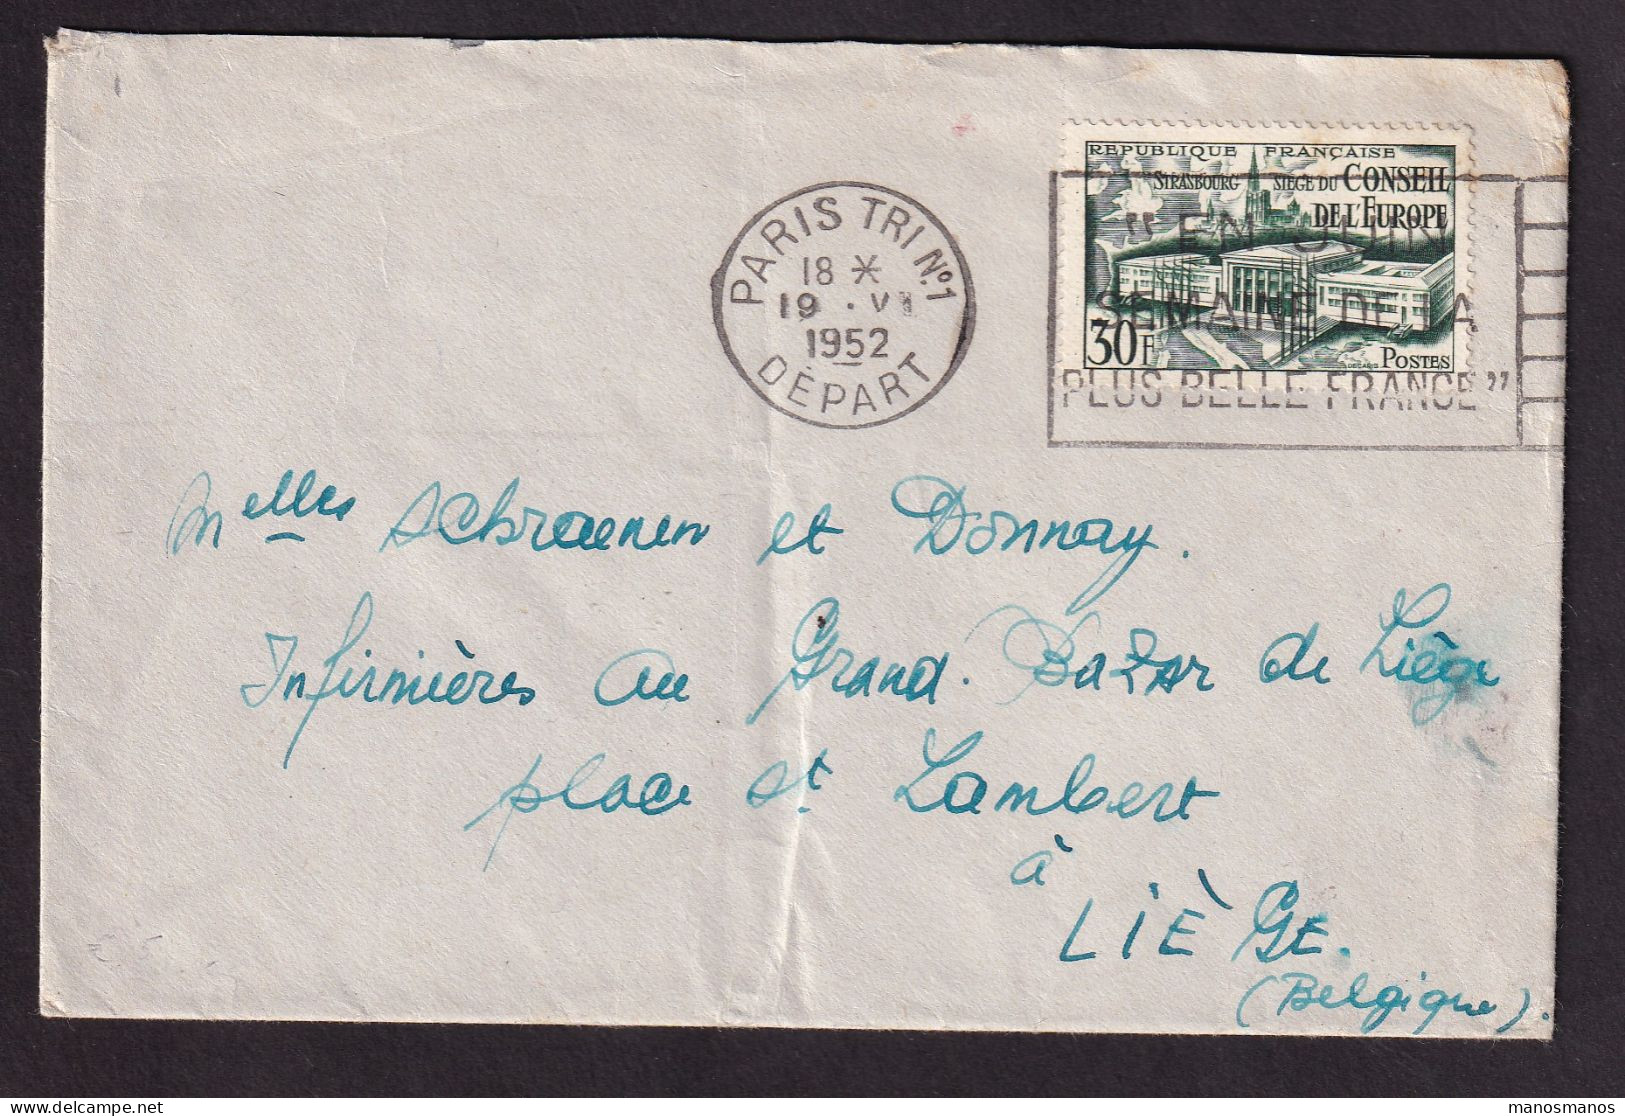 DDGG 041 - Enveloppe TP 923 (Conseil De L'Europe) PARIS 1952 Vers LIEGE Belgique - Briefe U. Dokumente